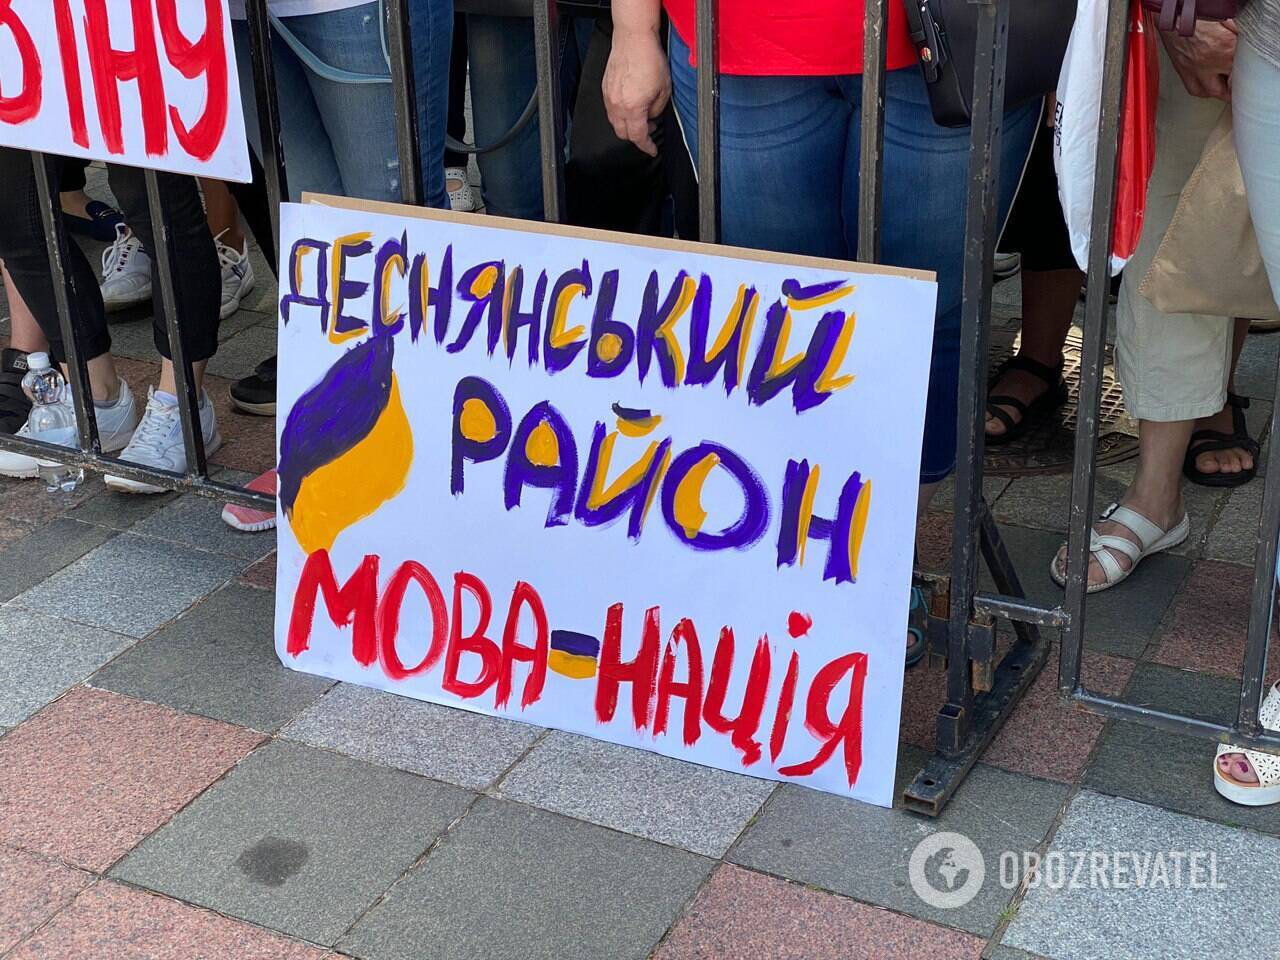 Під Радою збирався численний мітинг на захист української мови